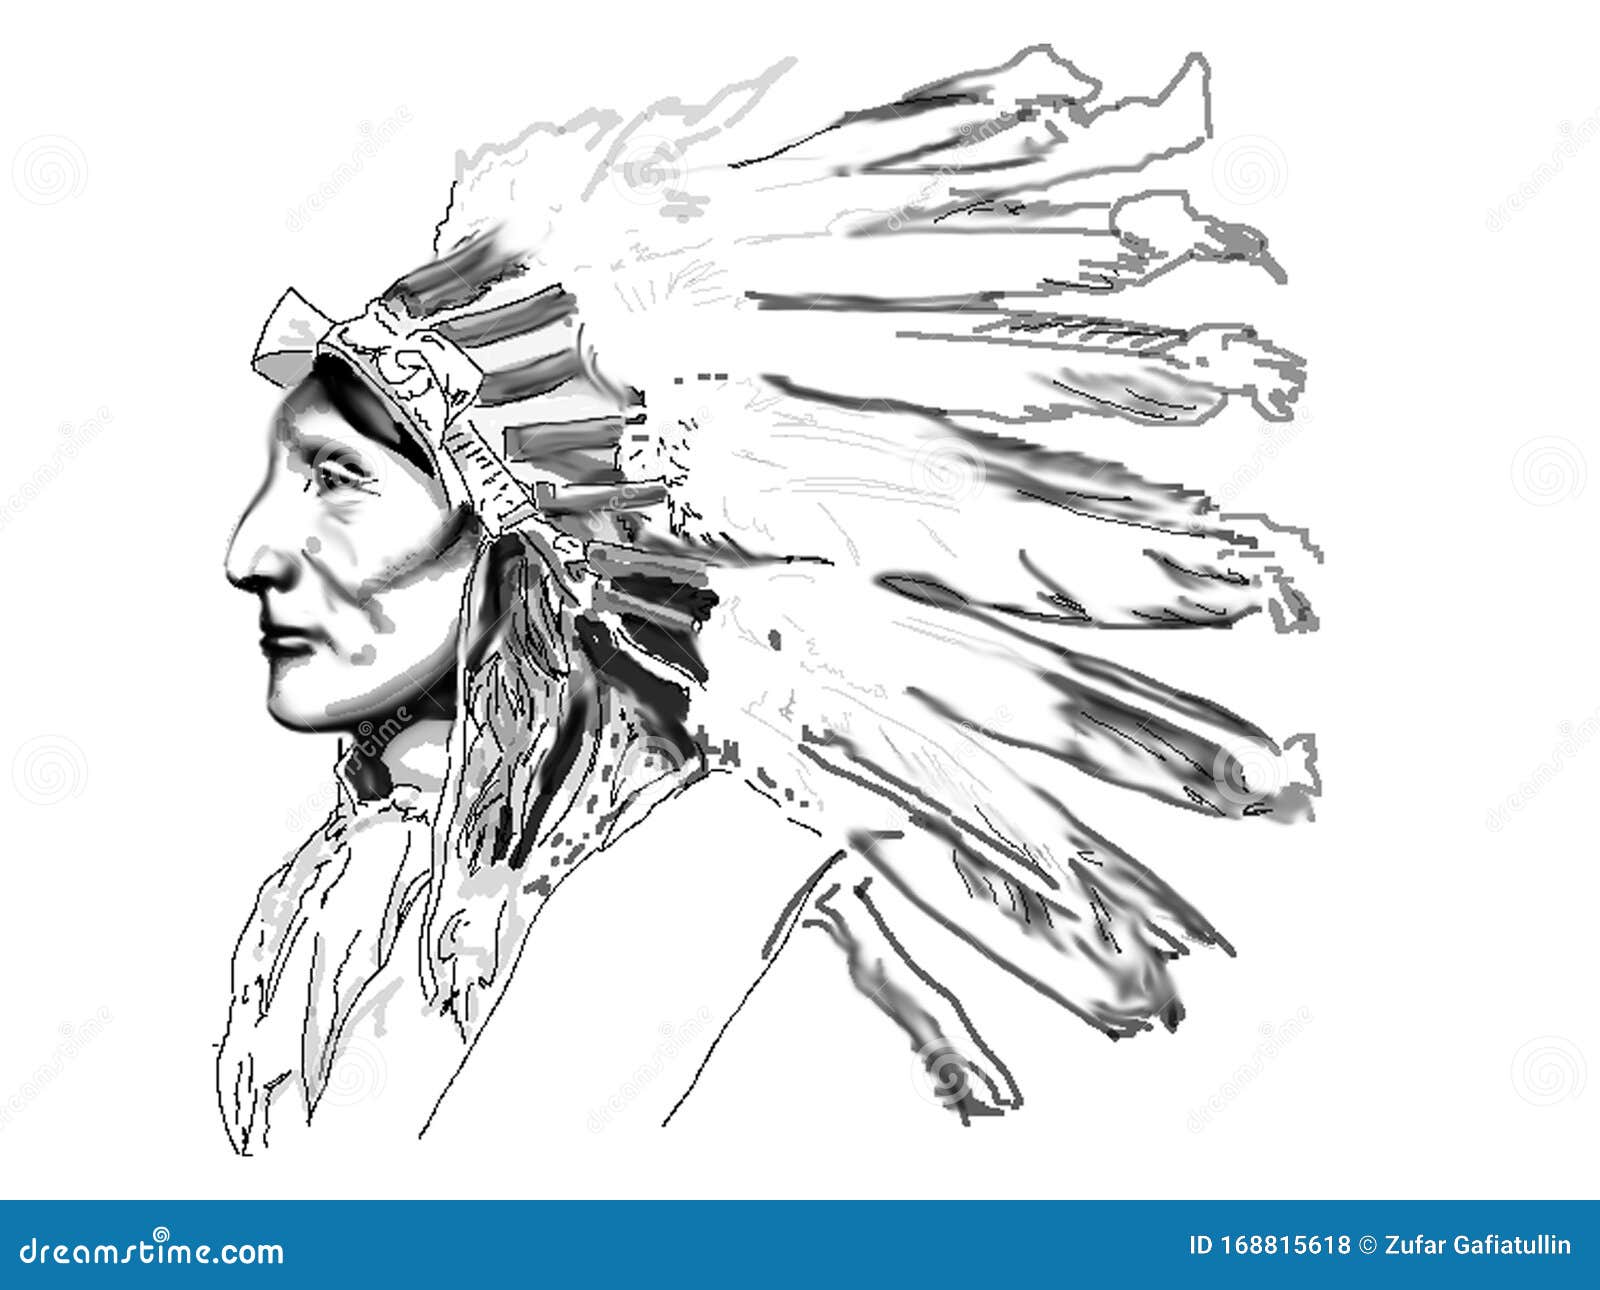 酋长 Apache 由 teearts 创作 | 乐艺leewiART CG精英艺术社区，汇聚优秀CG艺术作品